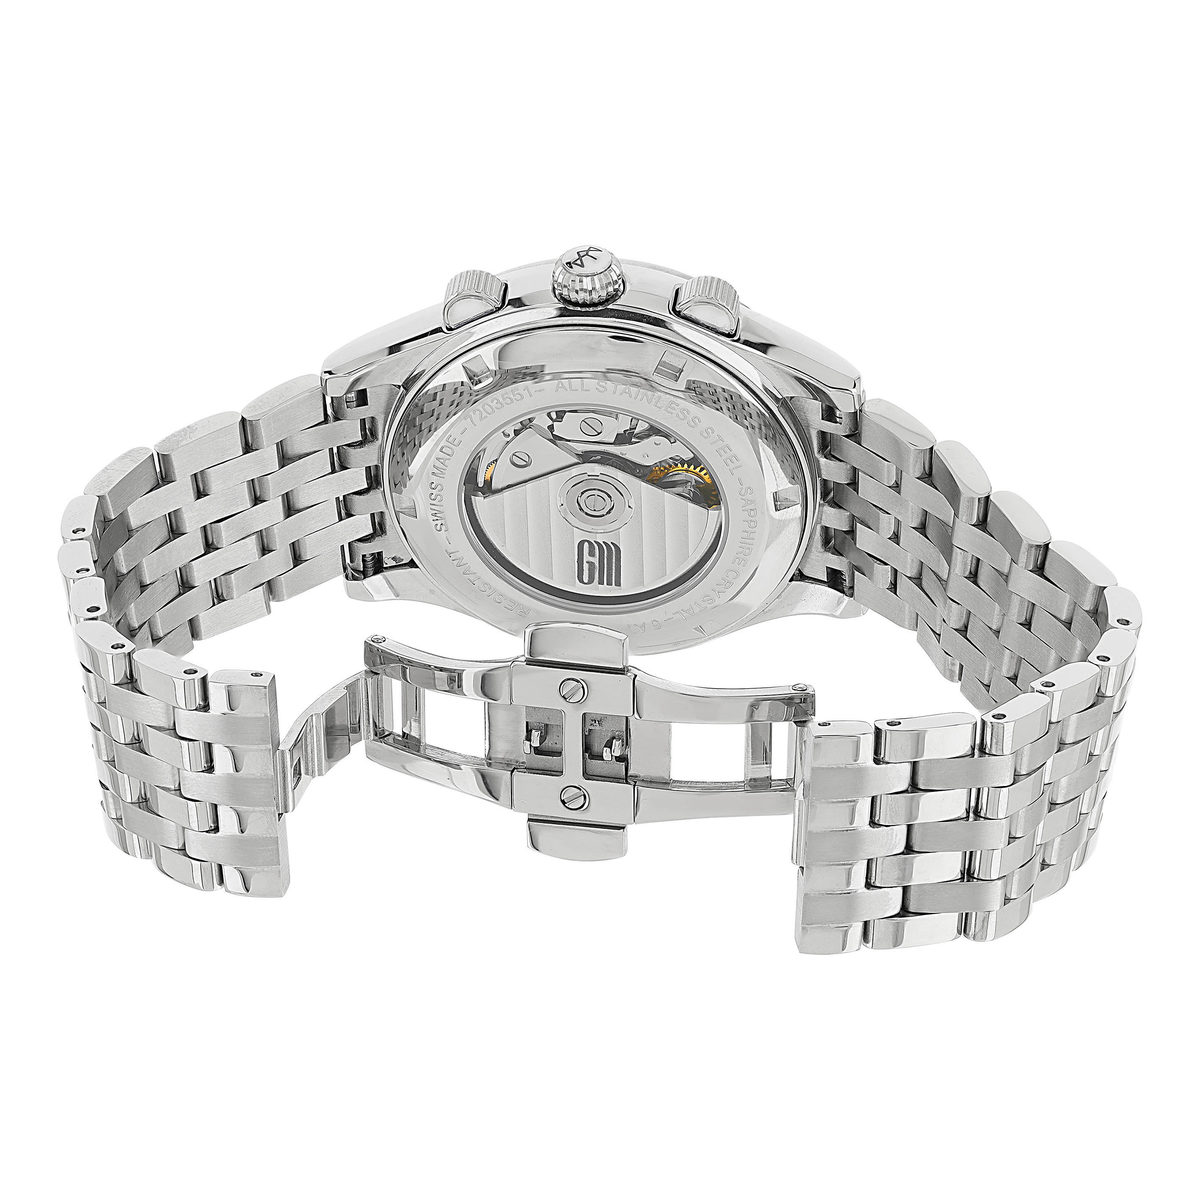 Montre MATY GM automatique chronographe cadran gris bracelet acier - vue 4